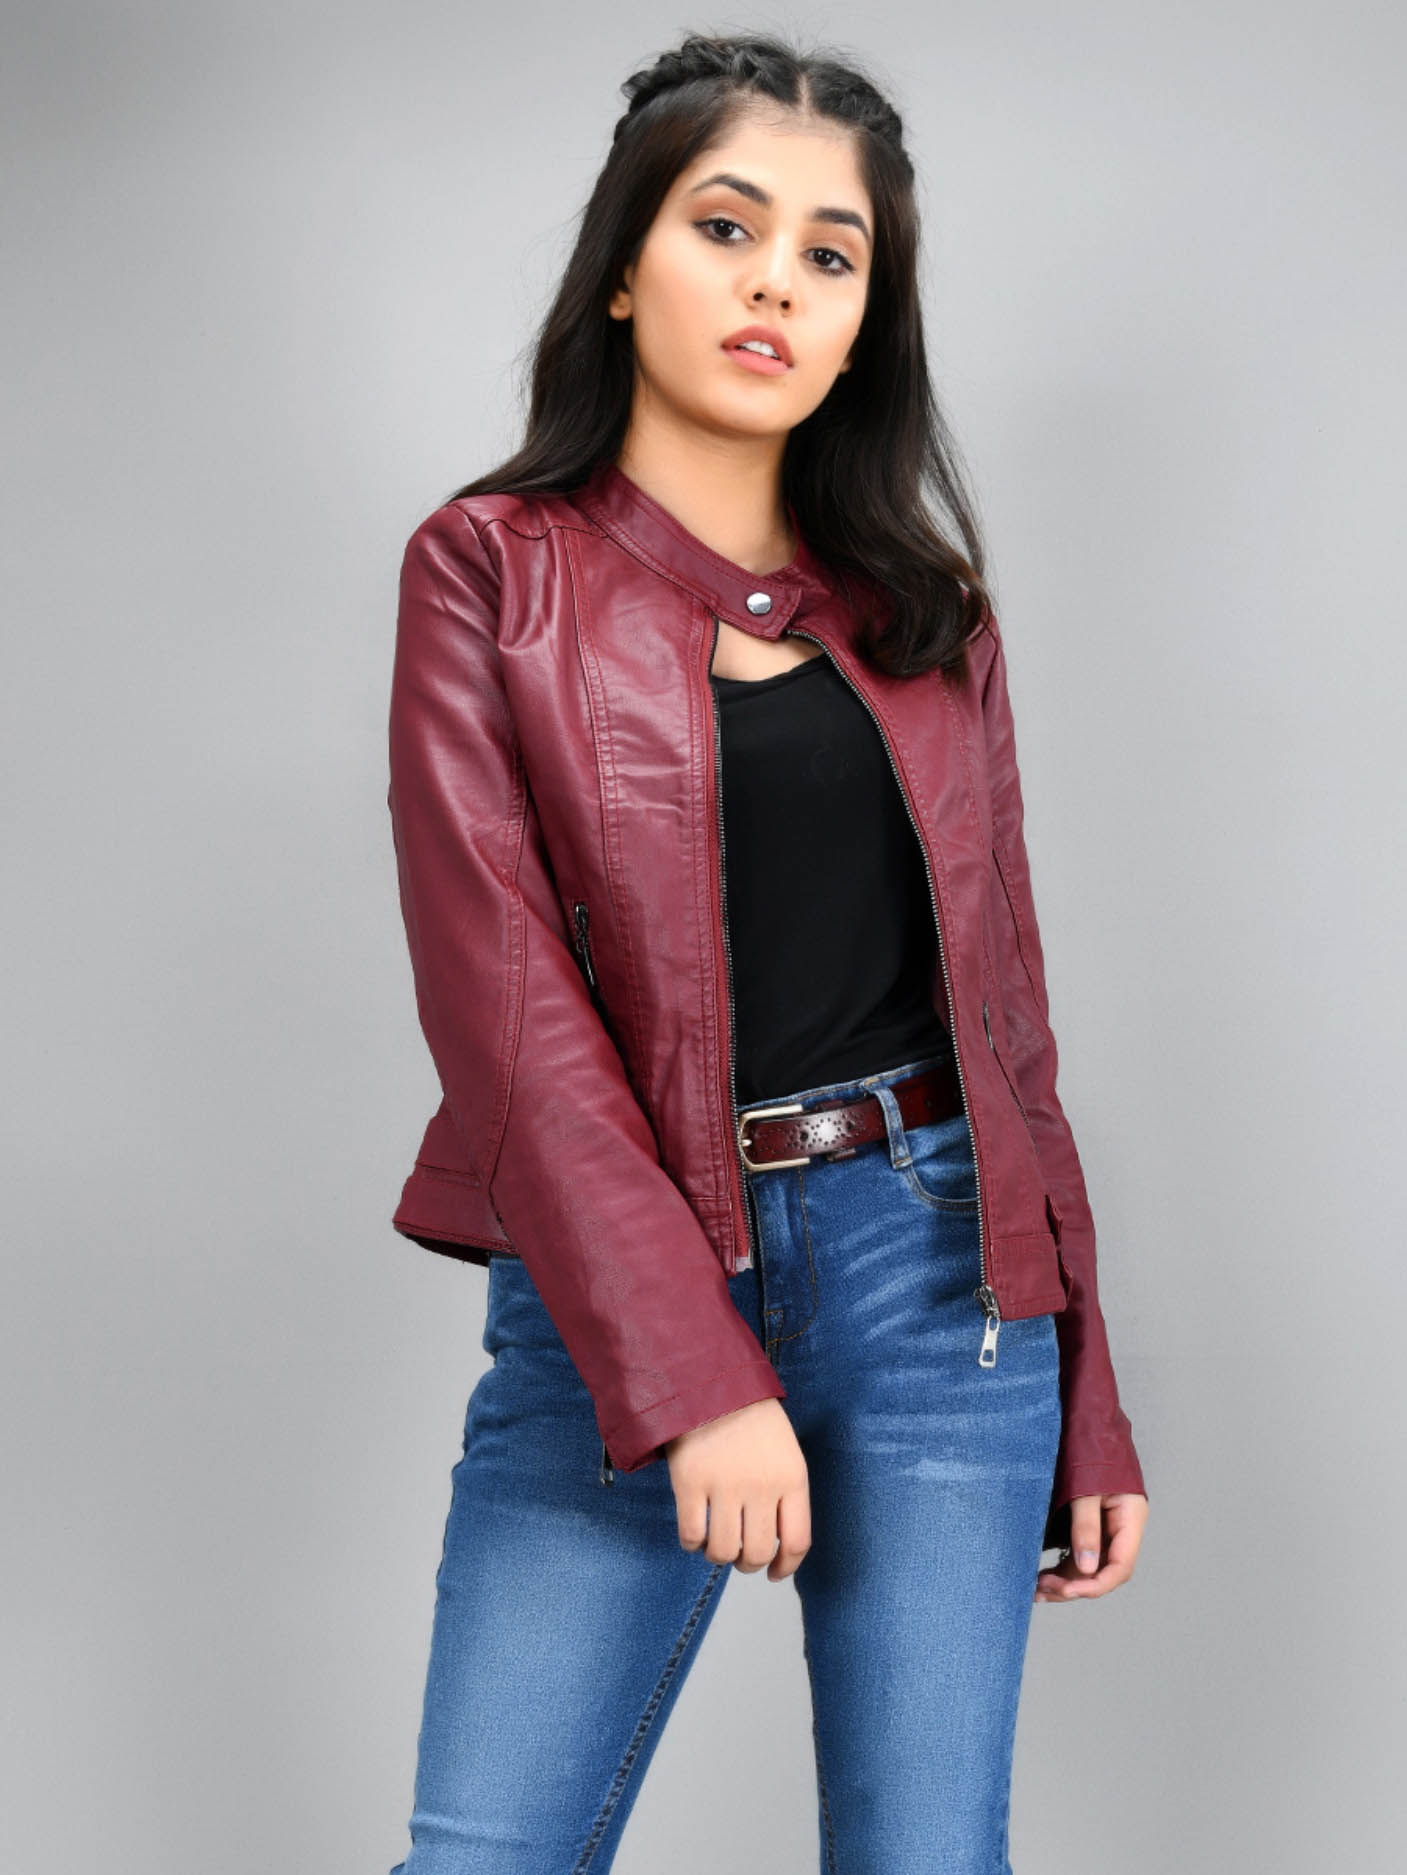 Iconic Leather Jacket - Maroon